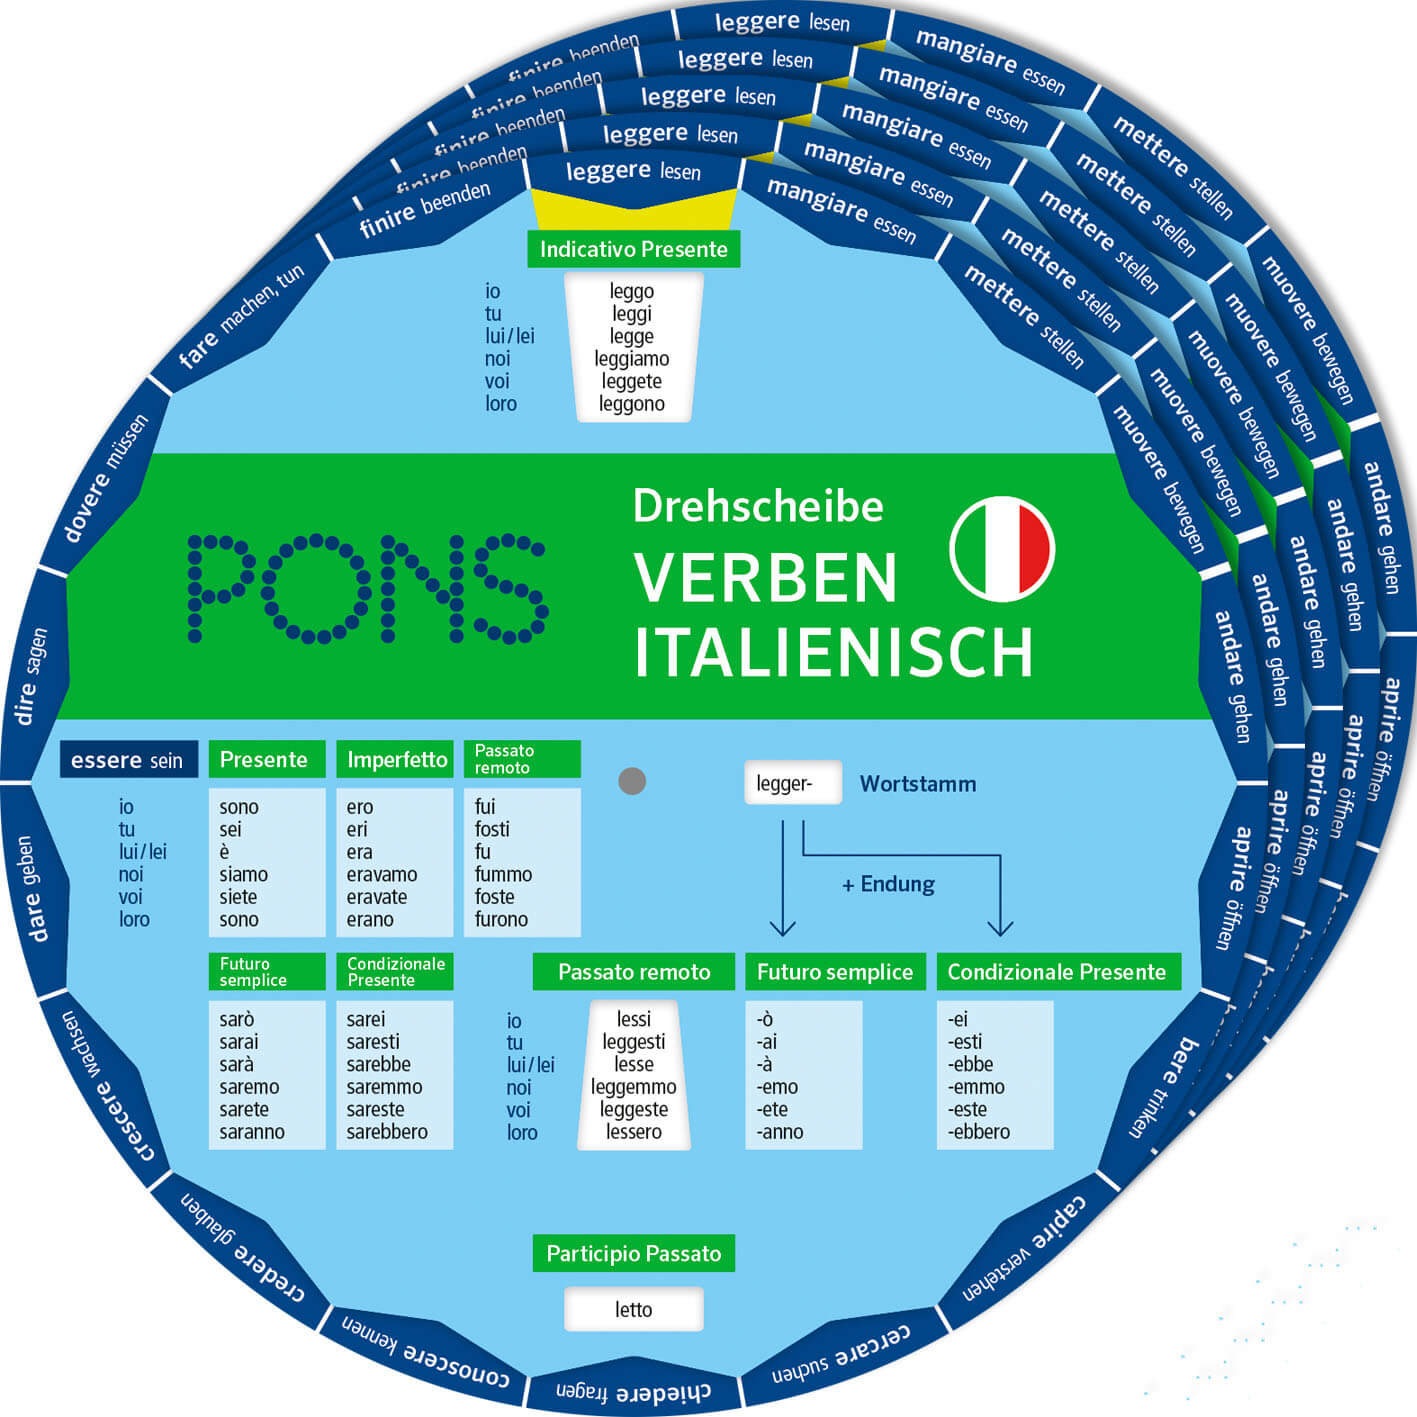 Verben-Drehscheibe Italienisch, Pons 5er-Set, SPEZIALBESTELLUNG!